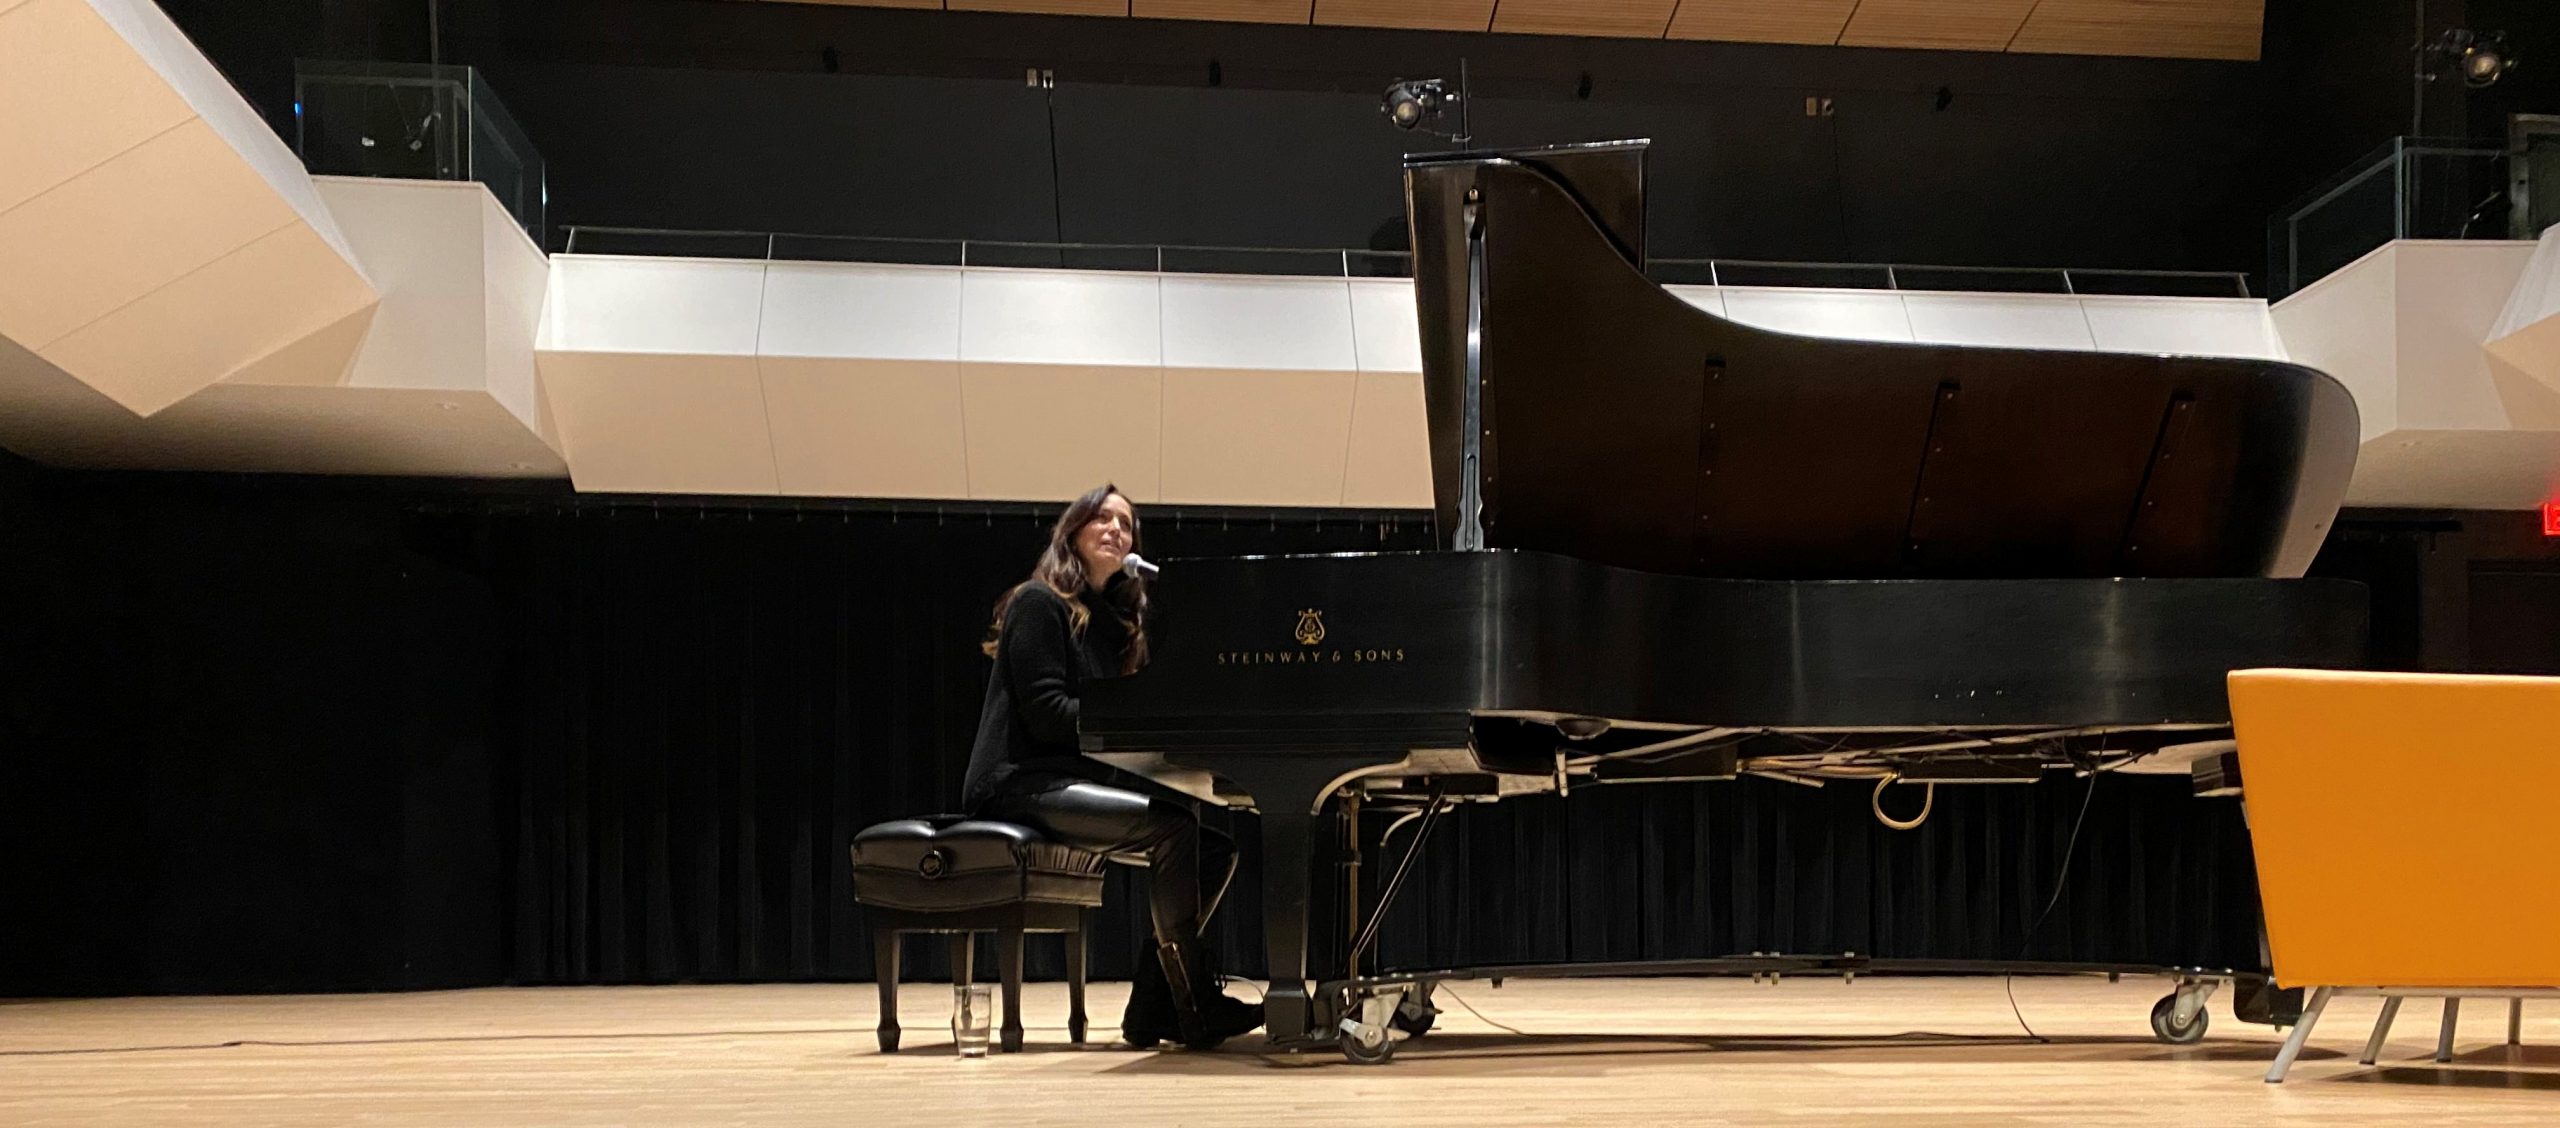 Chantal Kreviazuk on stage at piano